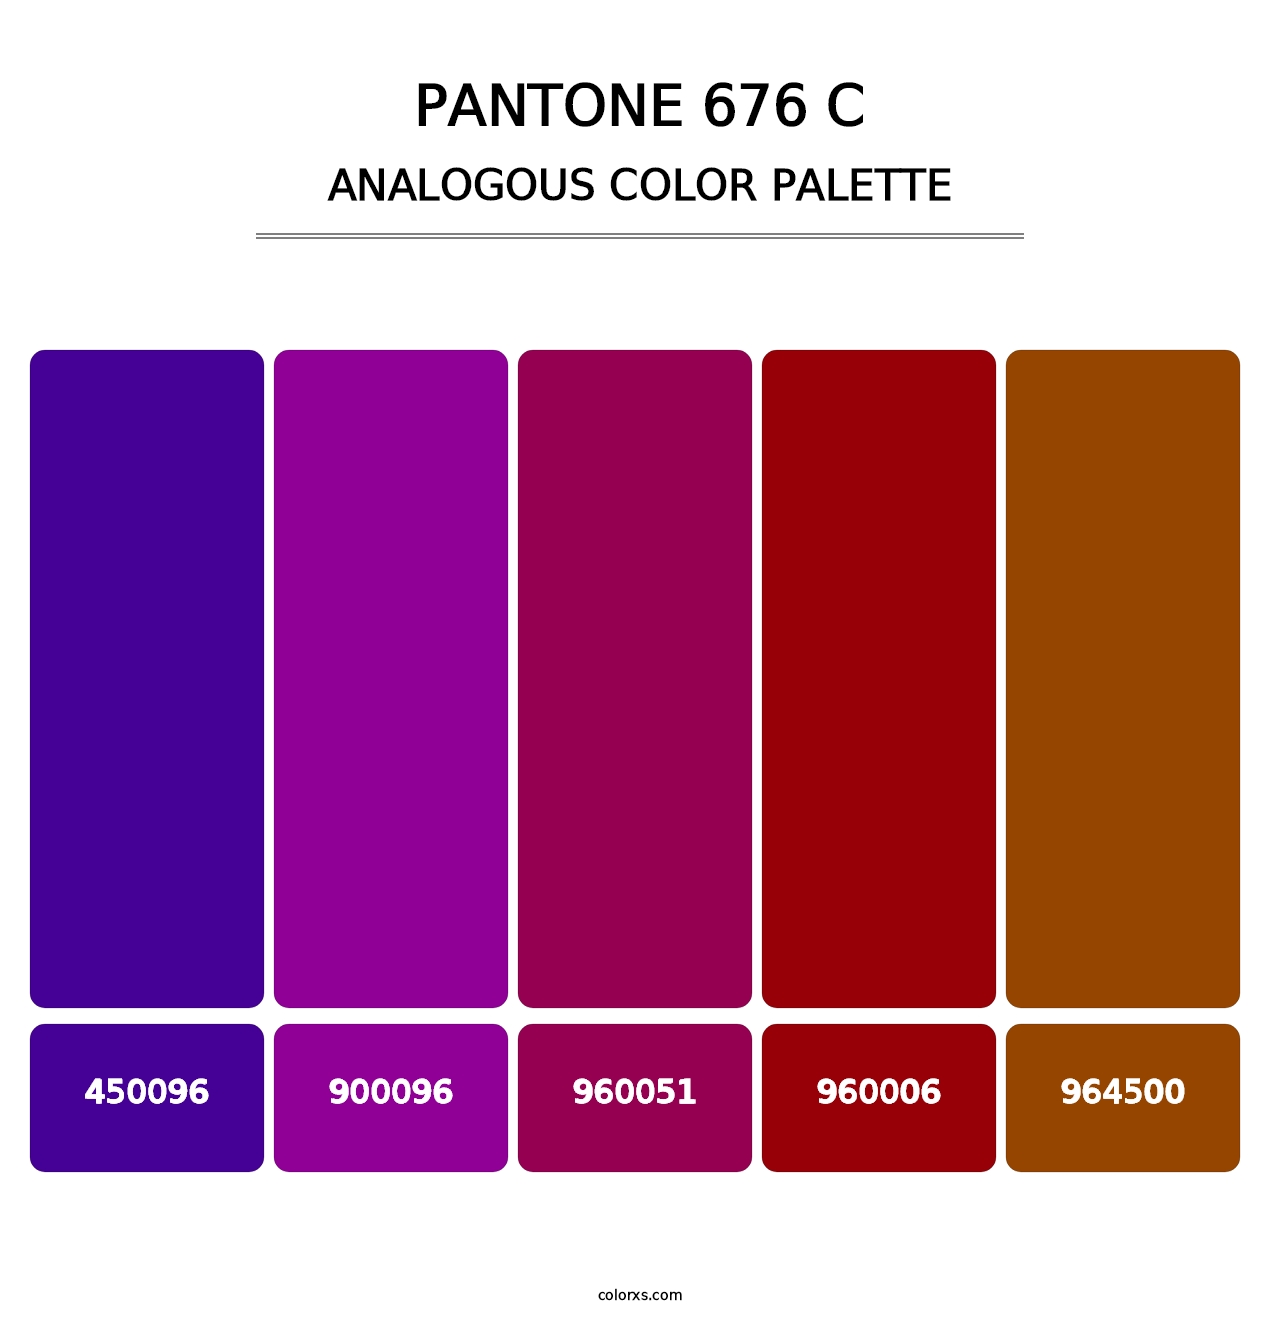 PANTONE 676 C - Analogous Color Palette